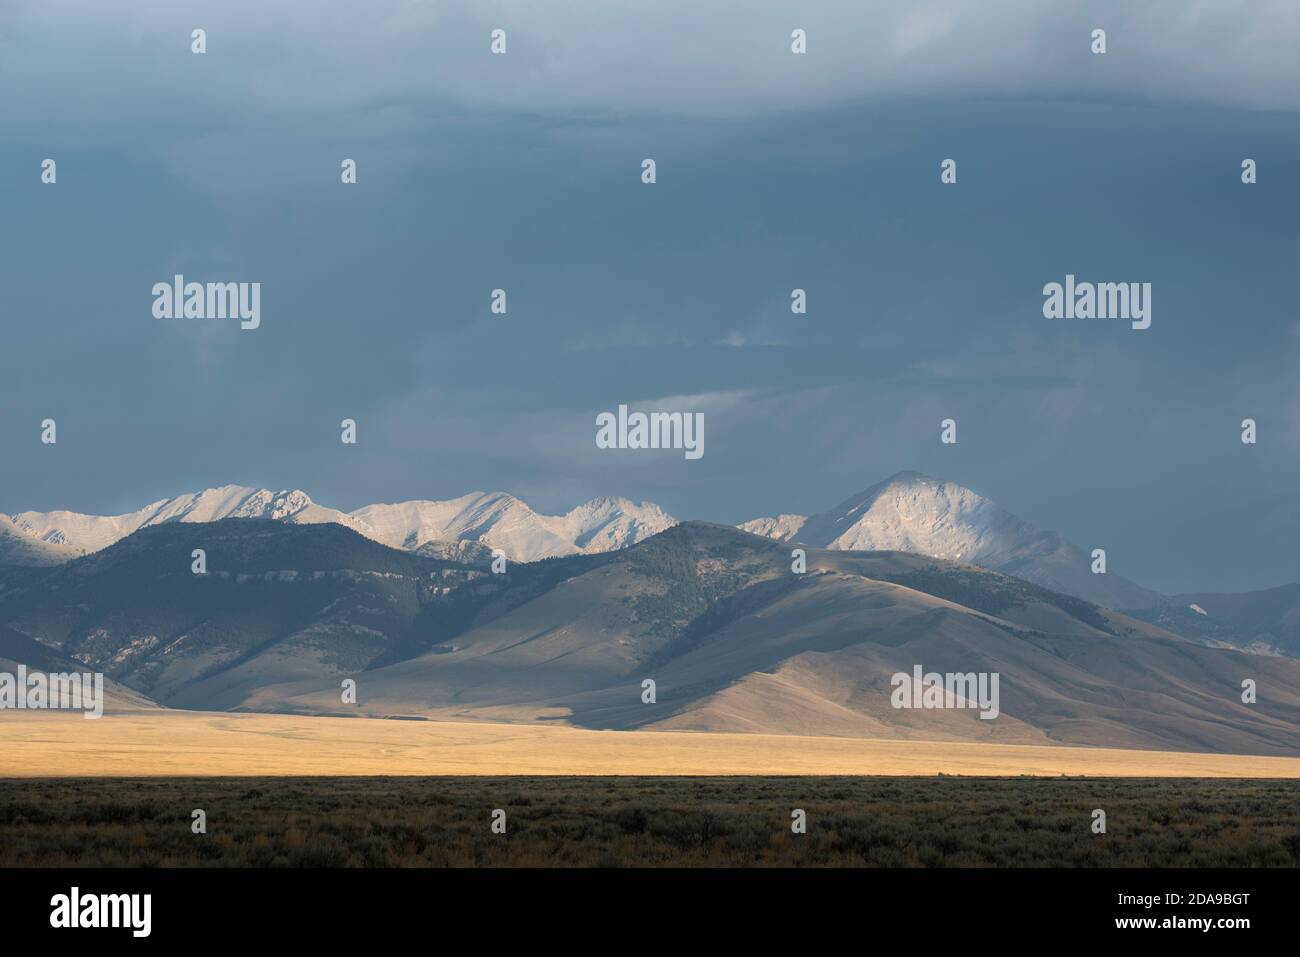 La luce del sole del mattino risplende sulla catena dei Limhi meridionali, incluso il Diamond Peak (a destra), nell'Idaho. Foto Stock